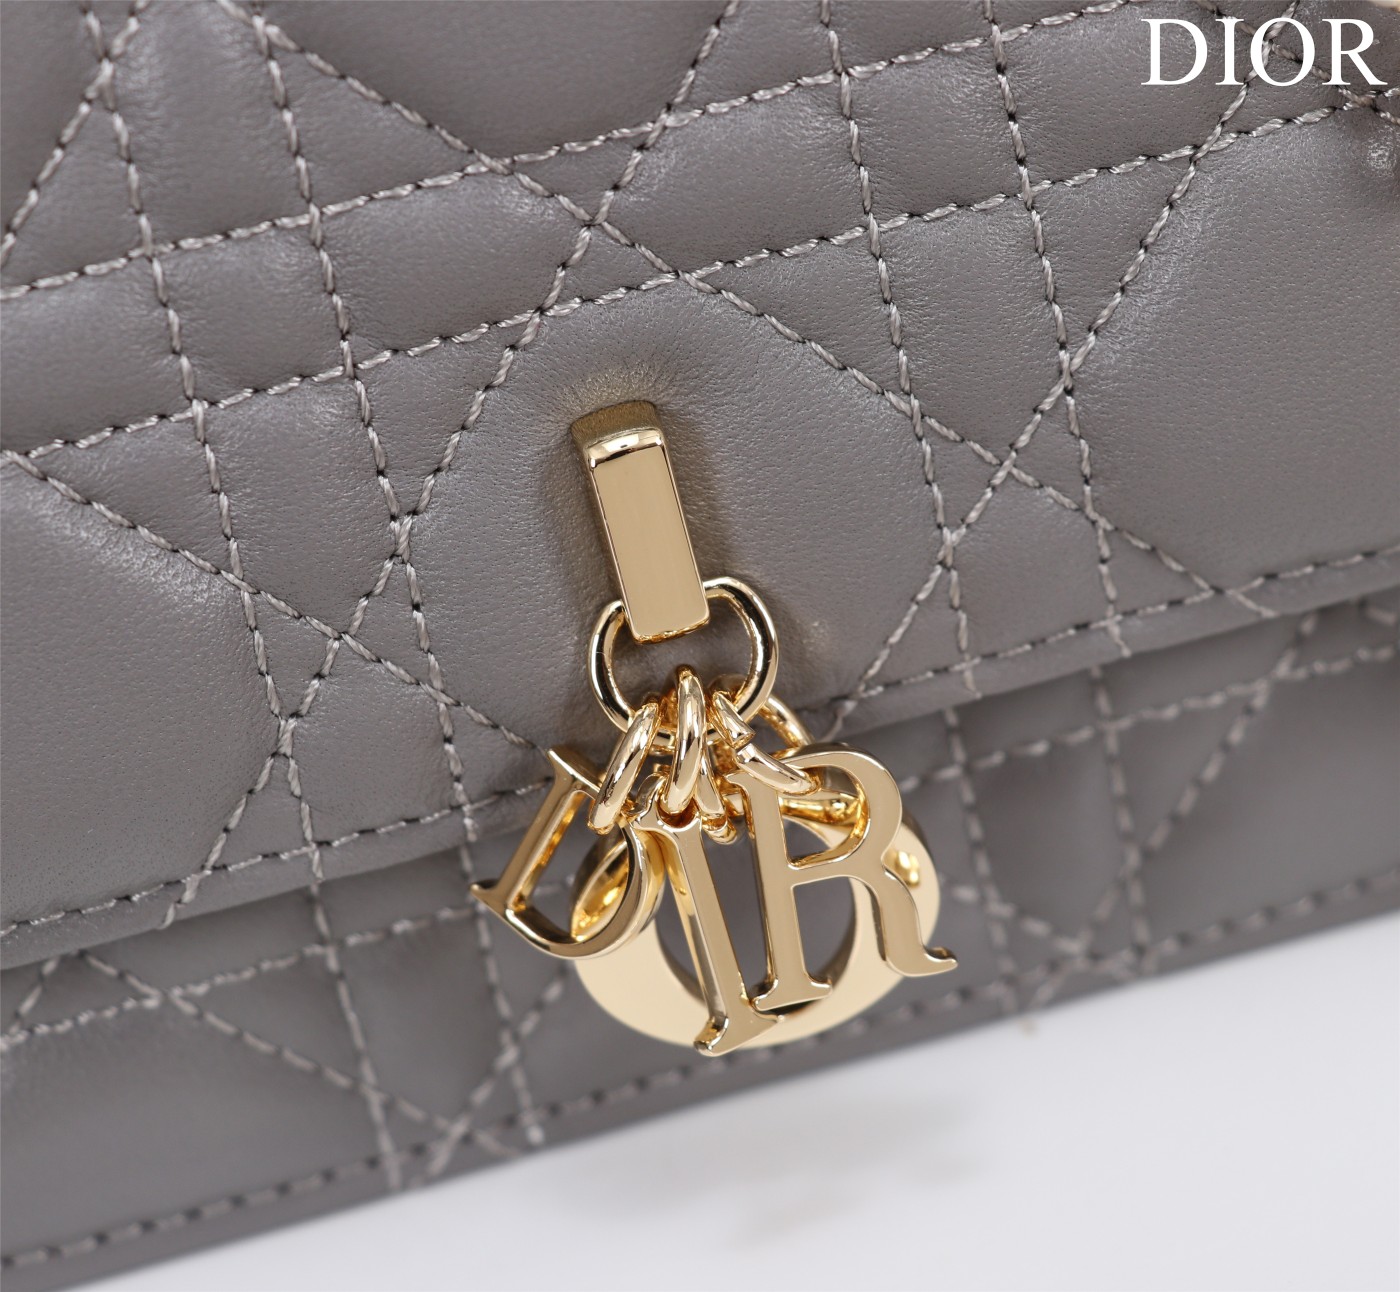 迪奥Dior顶级进口原厂羊皮链条包️️DIOR手袋于迪奥二零二三春夏成衣系列发布秀精彩亮相重新诠释迪奥别